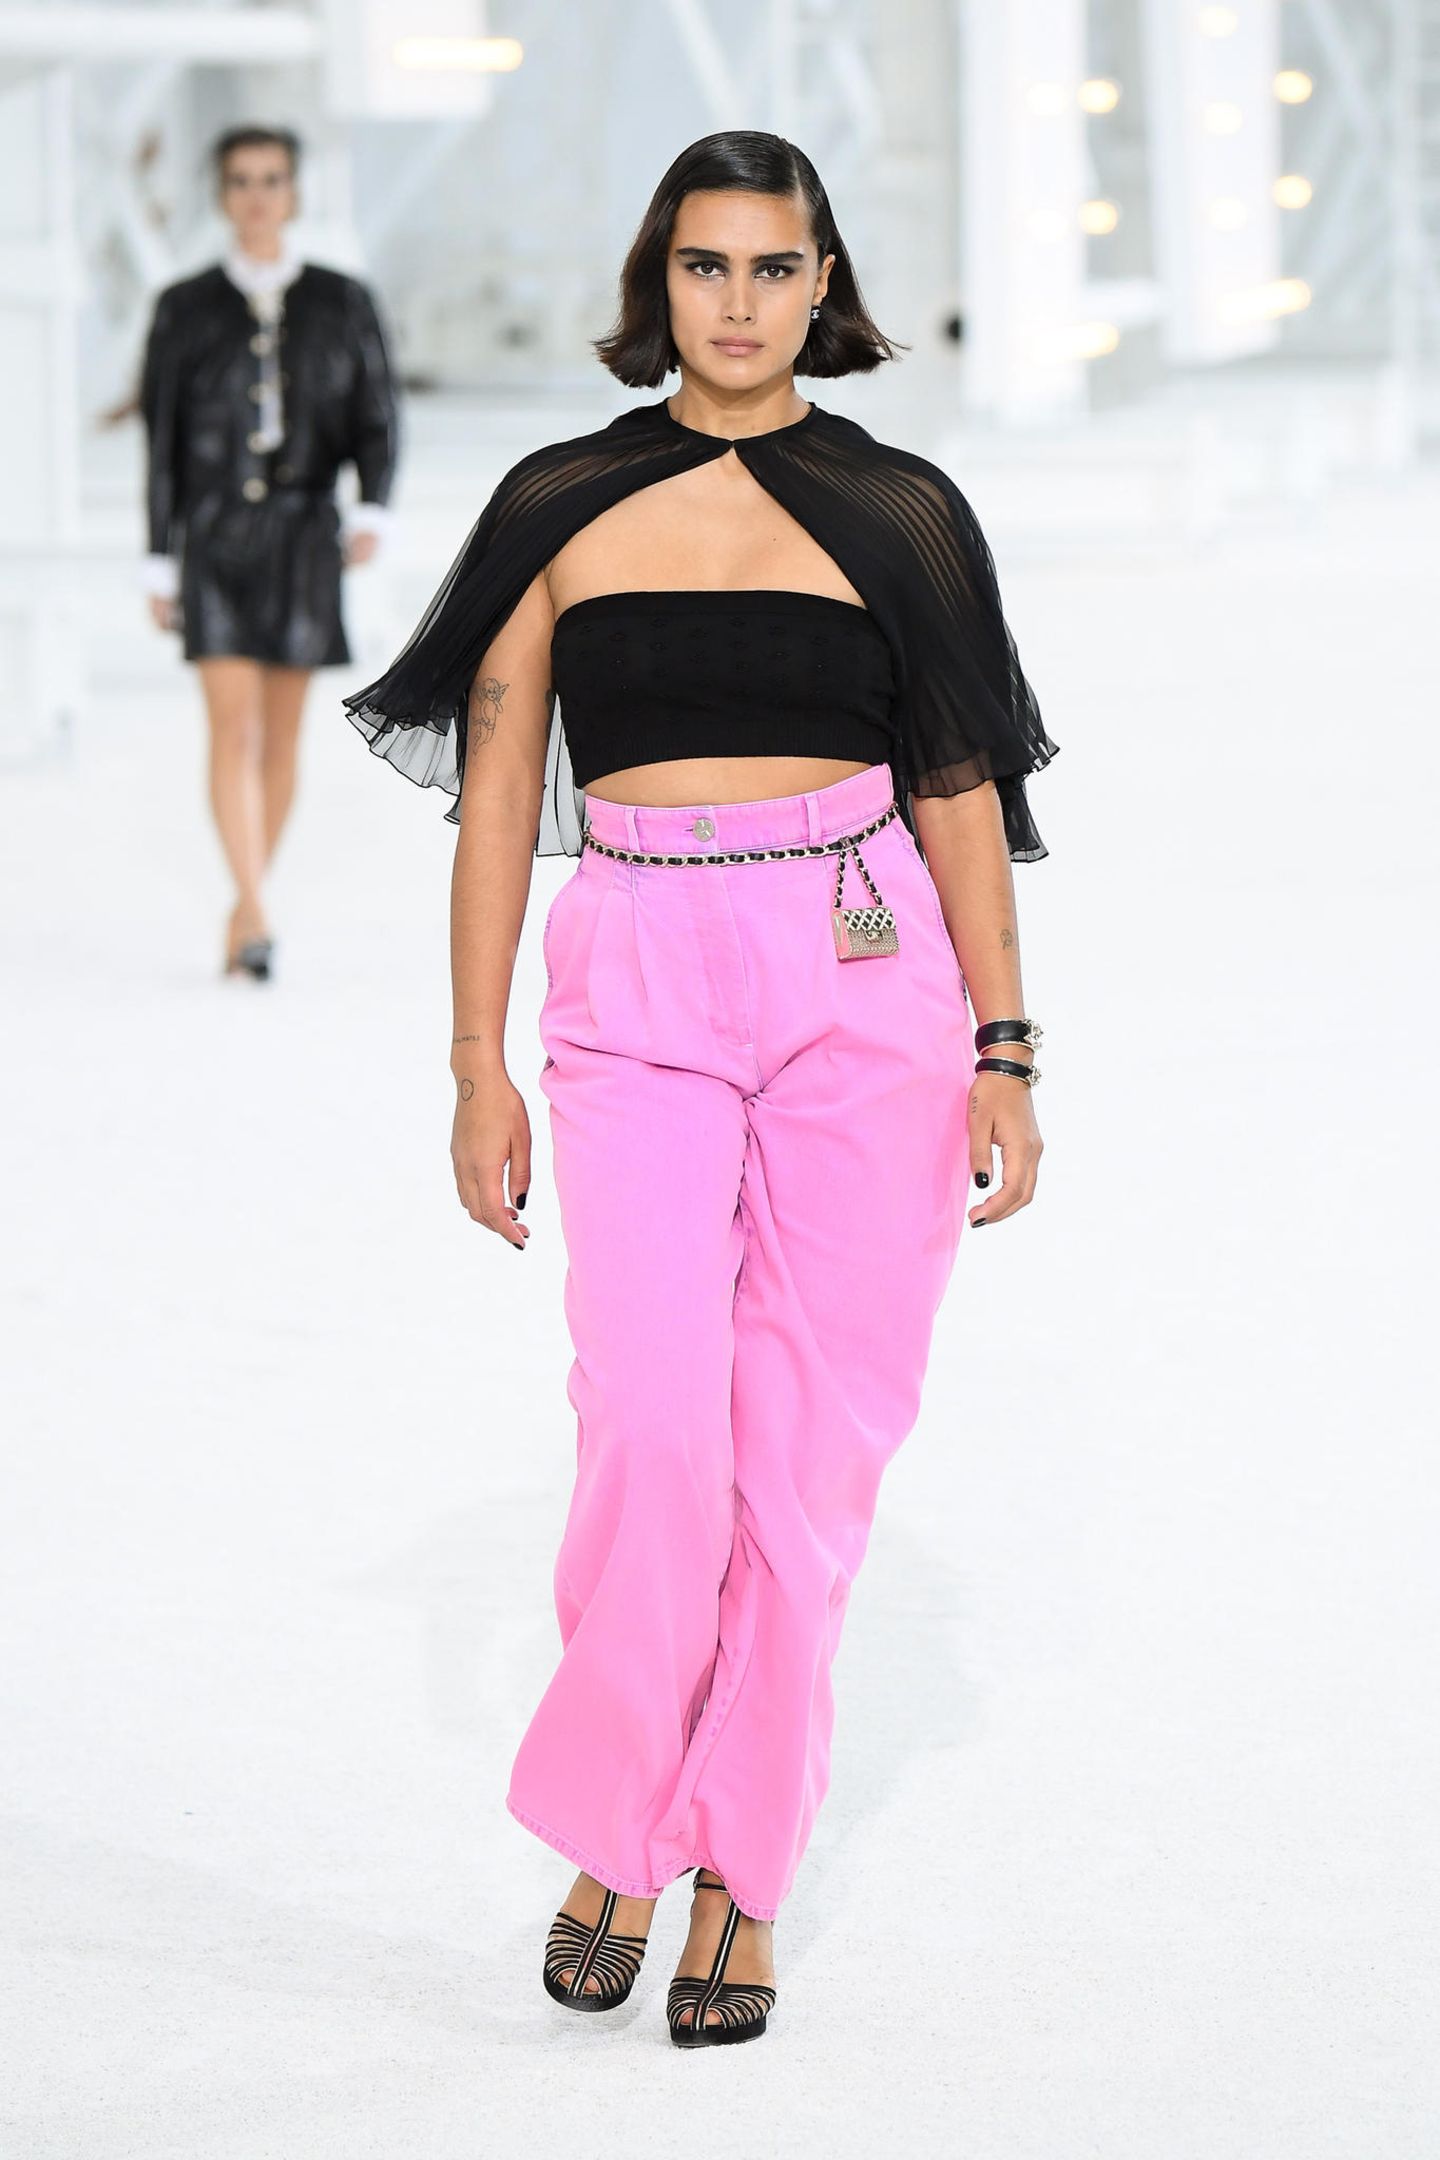 Model Jill Kortleve präsentiert auf dem Laufsteg die neueste Spring/Sommermode von Chanel anlässlich der Paris Fashion Week.